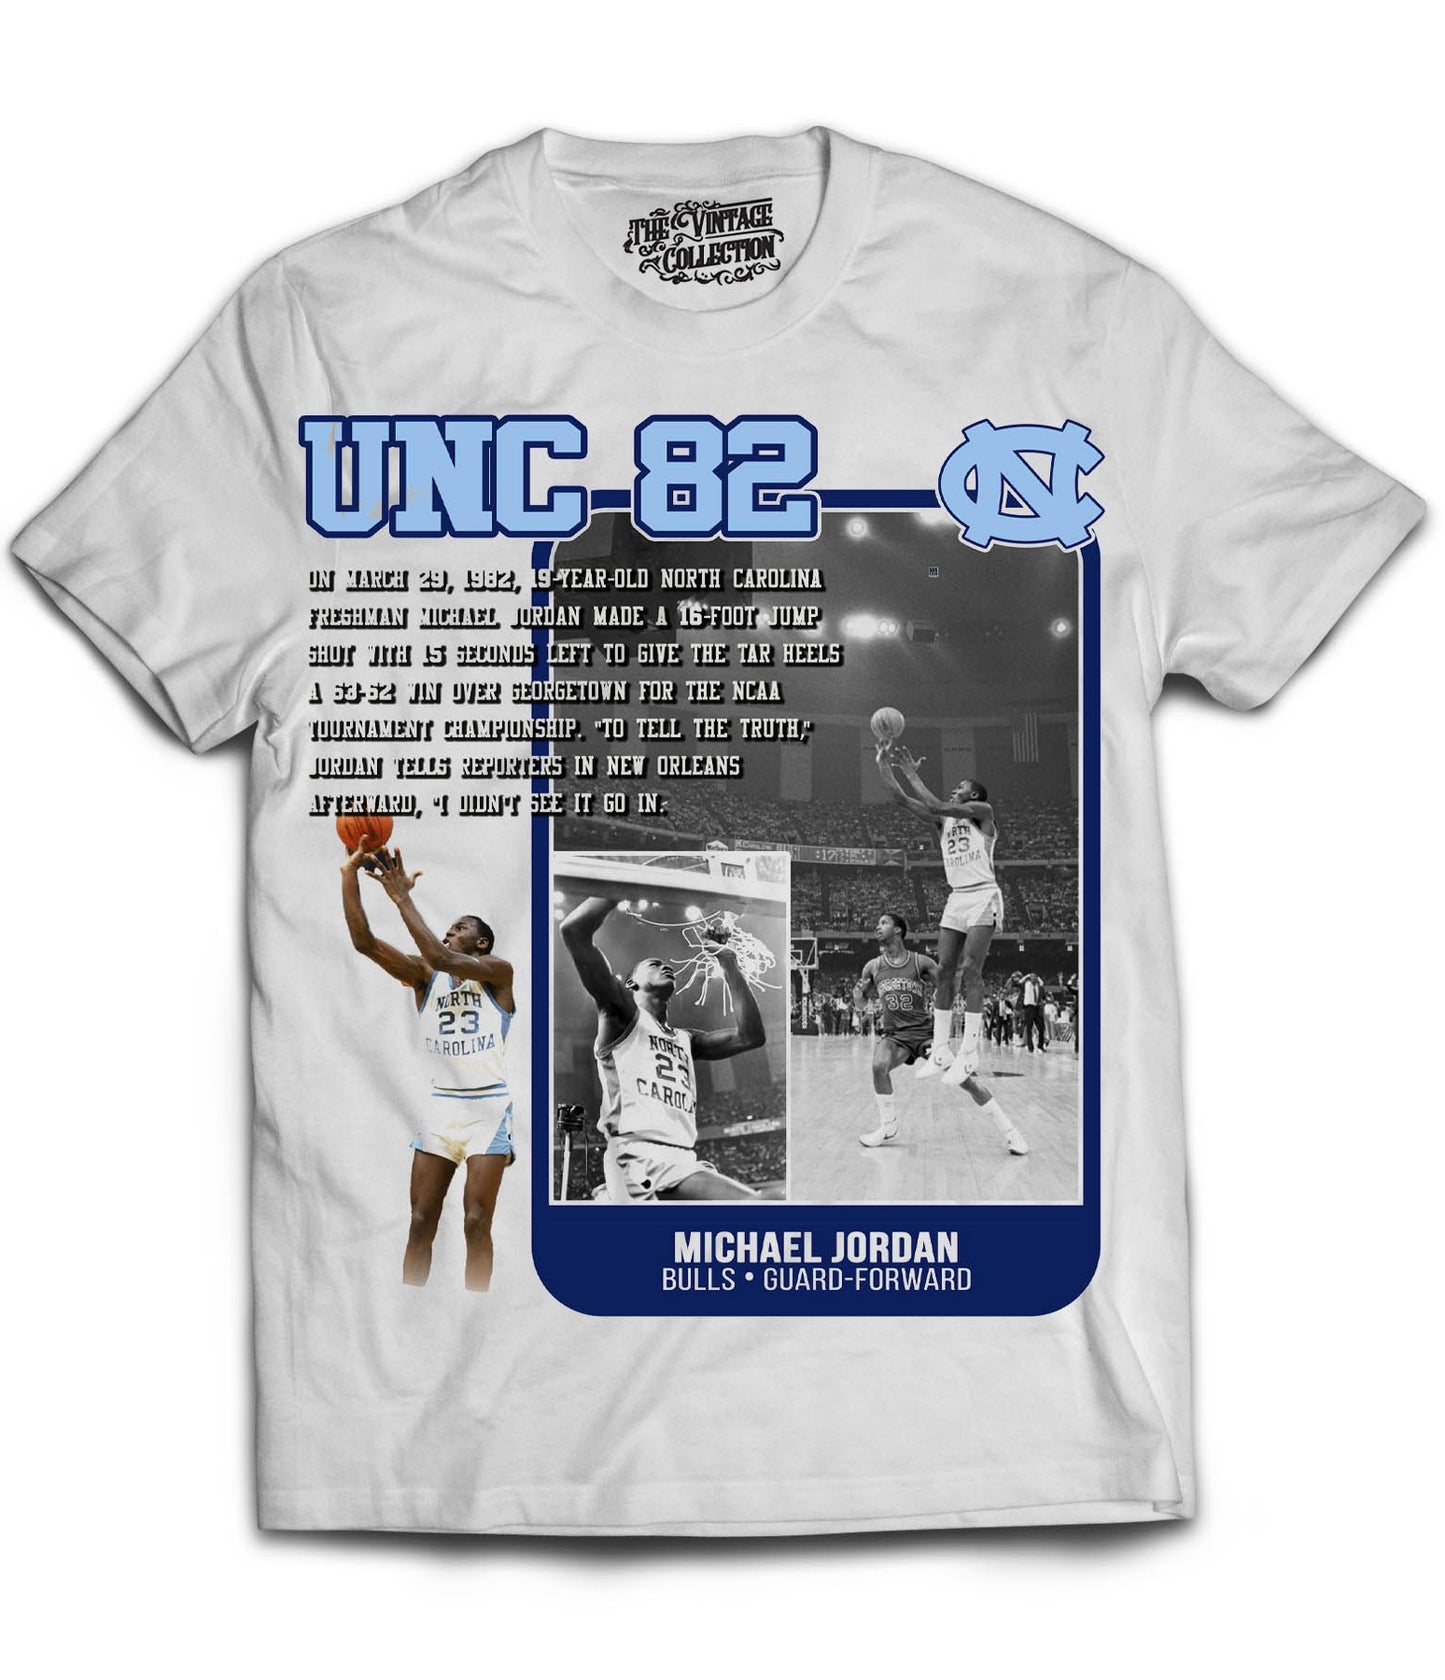 UNC 82 Card Shirt (White)